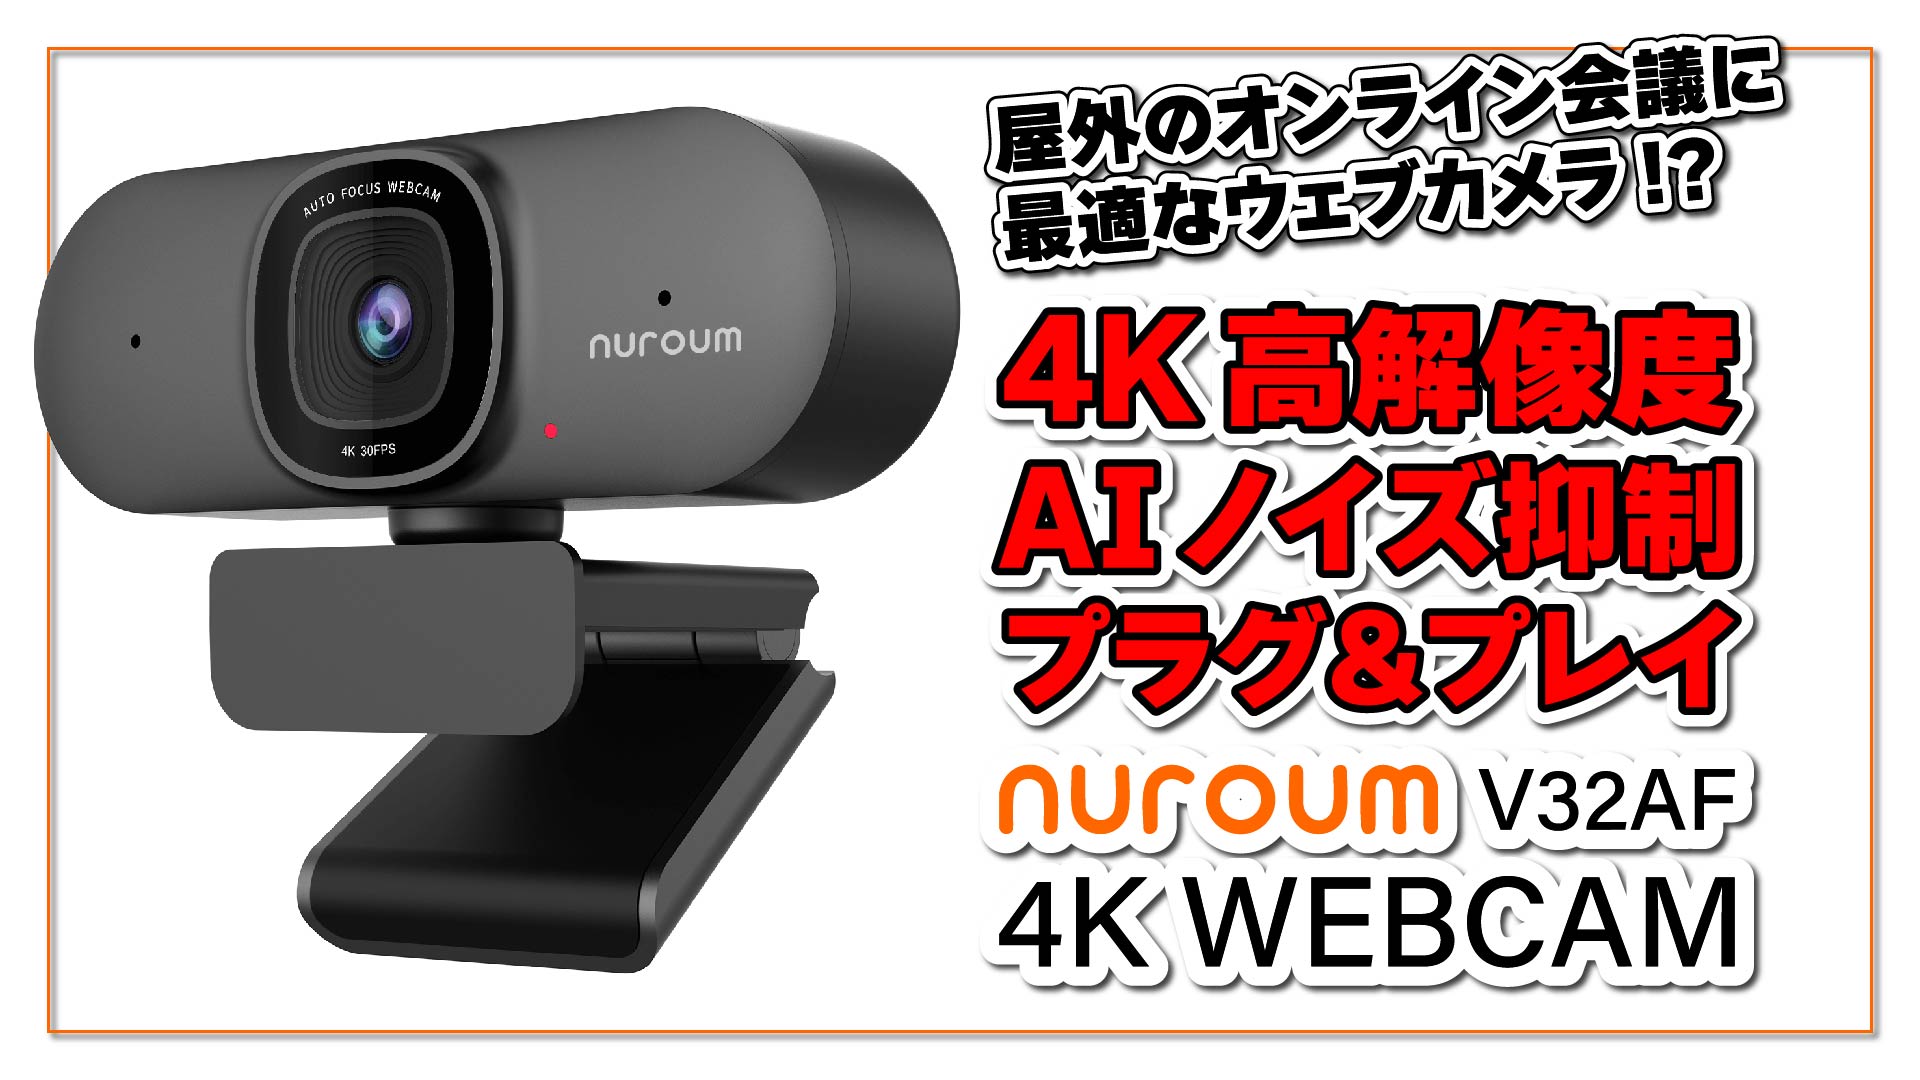 【実機レビュー】NUROUM V32AF 屋外のオンライン会議に最適な Web カメラ!? 4K 高解像度・AI ノイズ抑制・プラグ＆プレイの高機能 Web カメラ